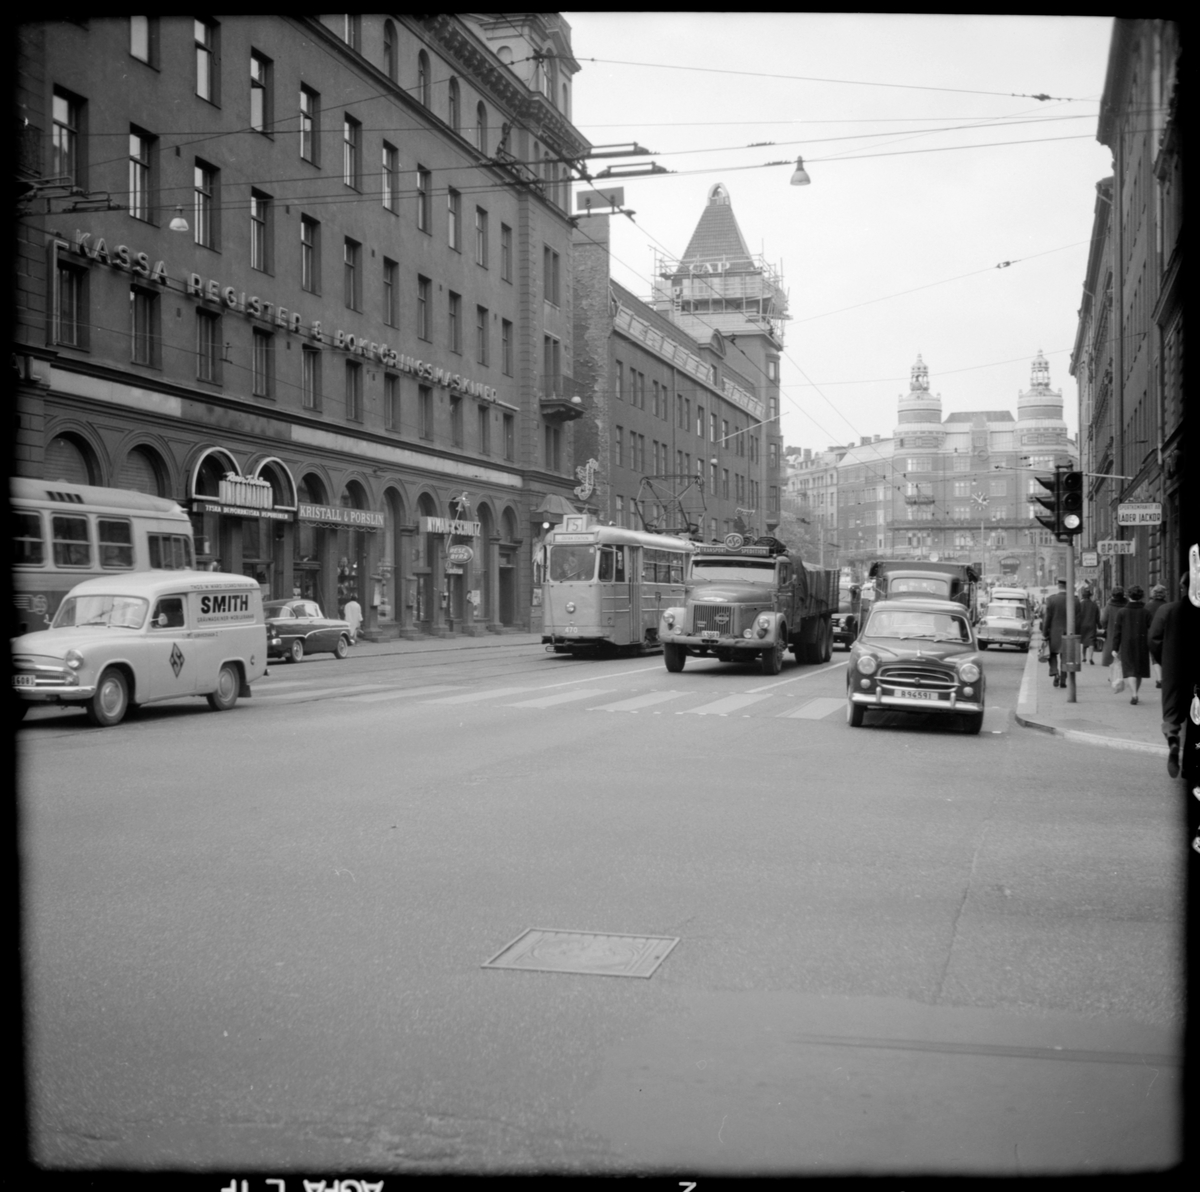 Aktiebolaget Stockholms Spårvägar, SS A26 470 "mustang" linje 5 Karlberg - Östra station vid hållplats Vasagatan.